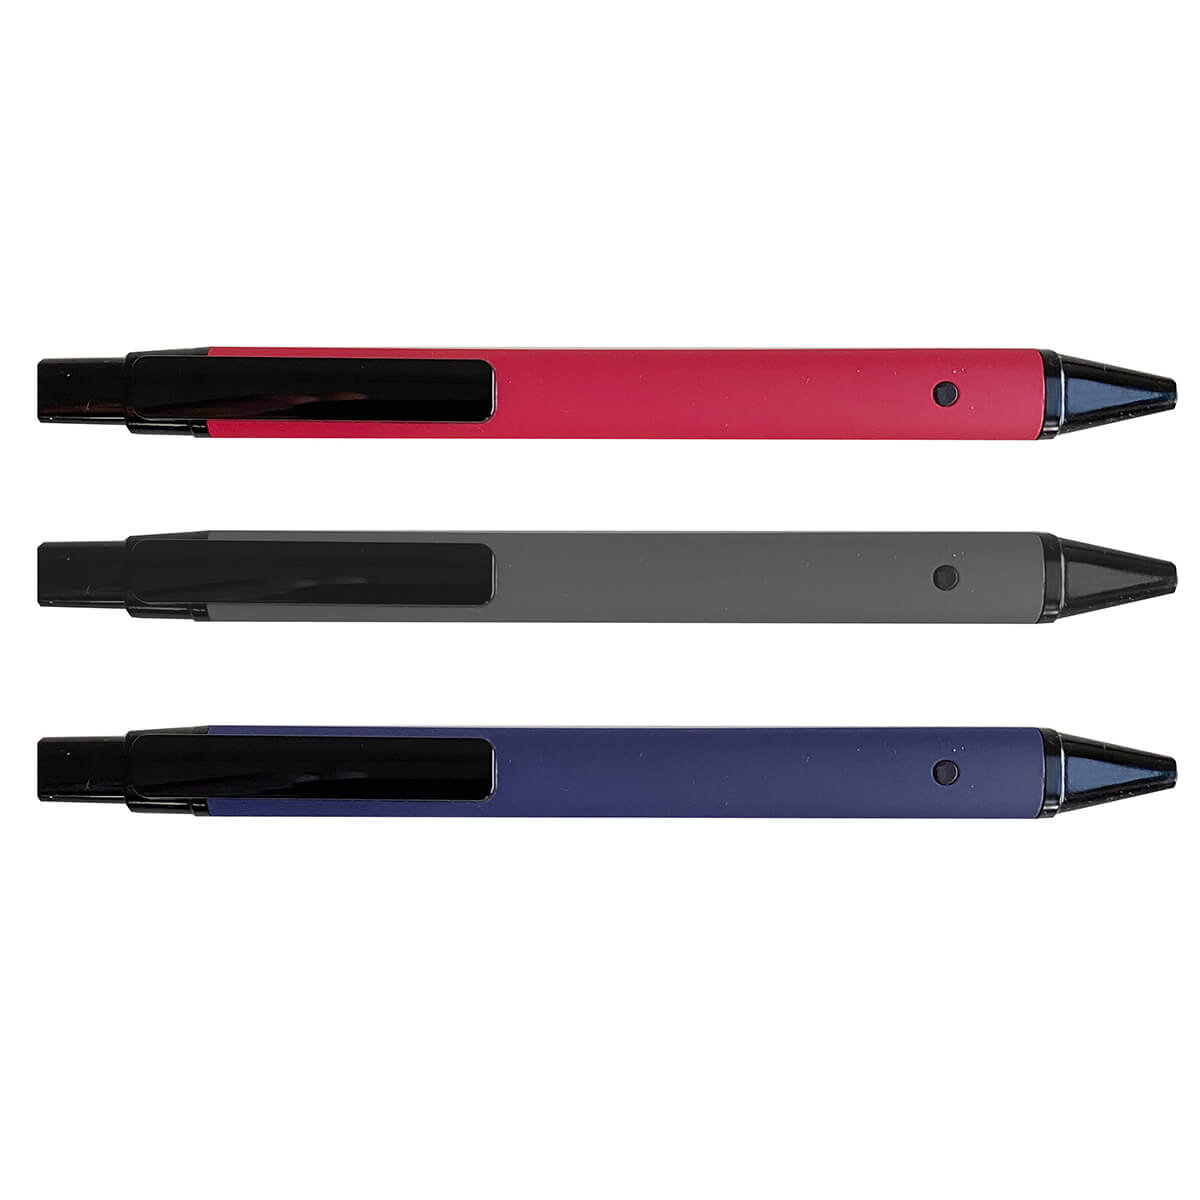 Στυλό μεταλλικό με σιλικόνη (M 7116)